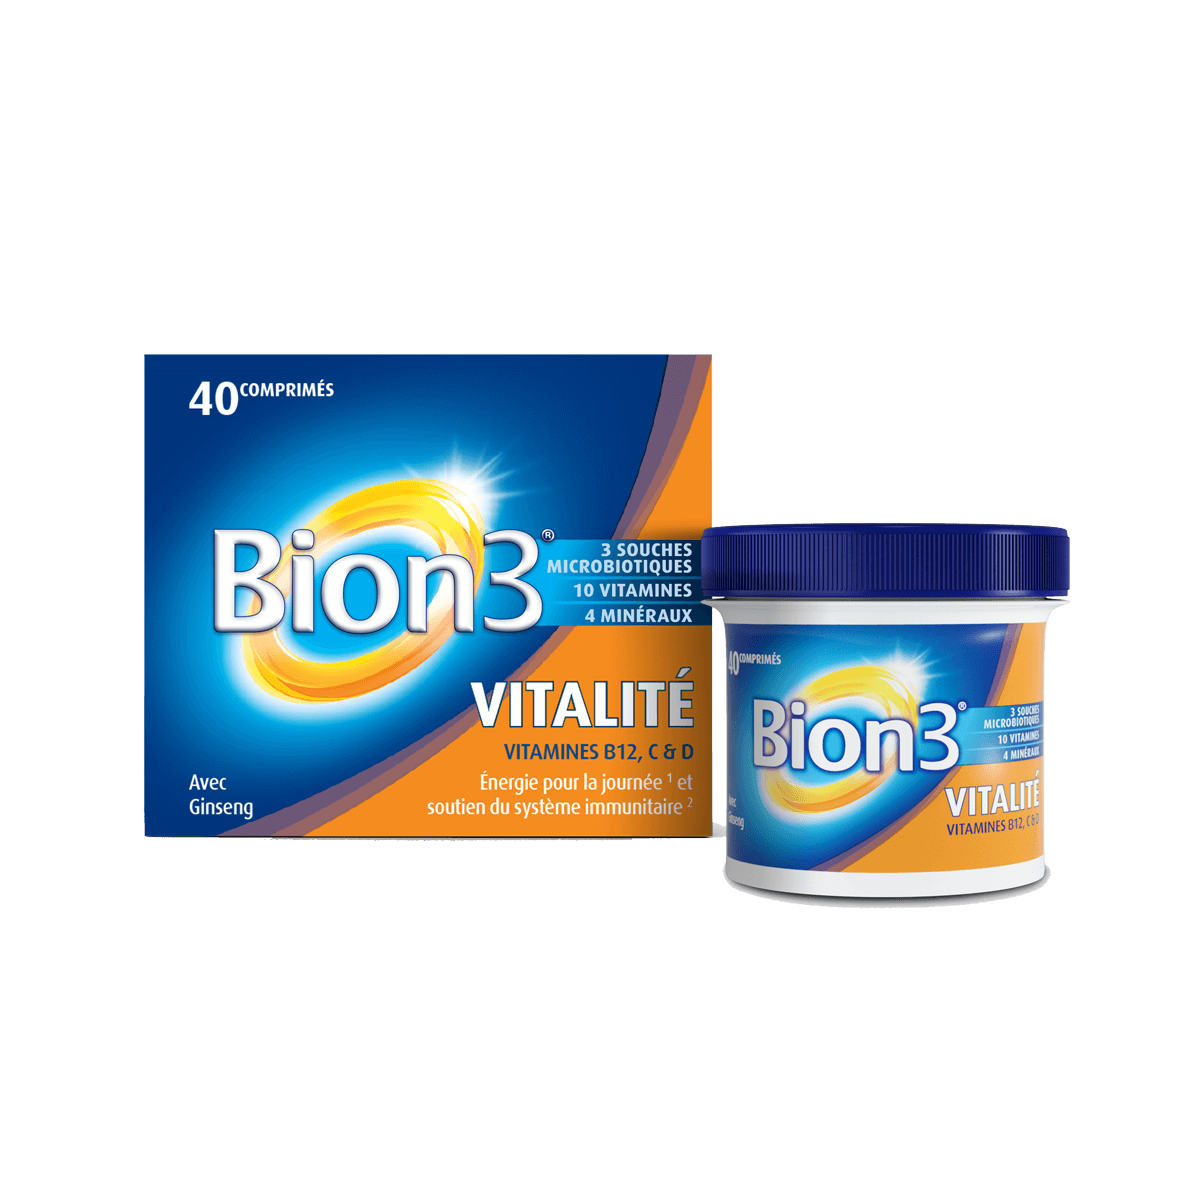 Vitamines contre la fatigue Bion®3 Vitalité